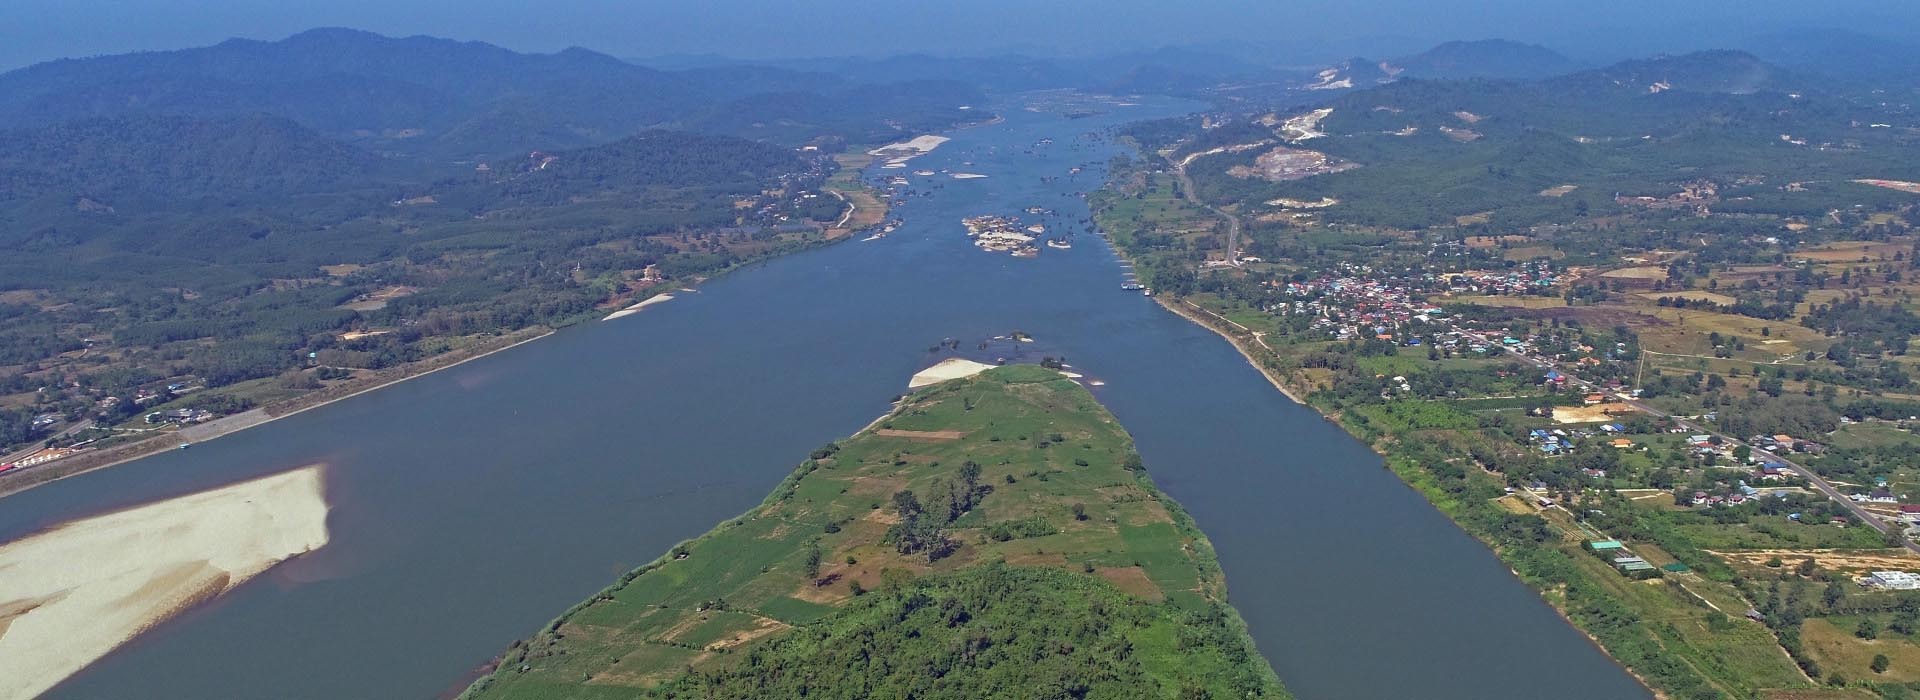 Lưu vực sông Mekong. (Nguồn MRC)